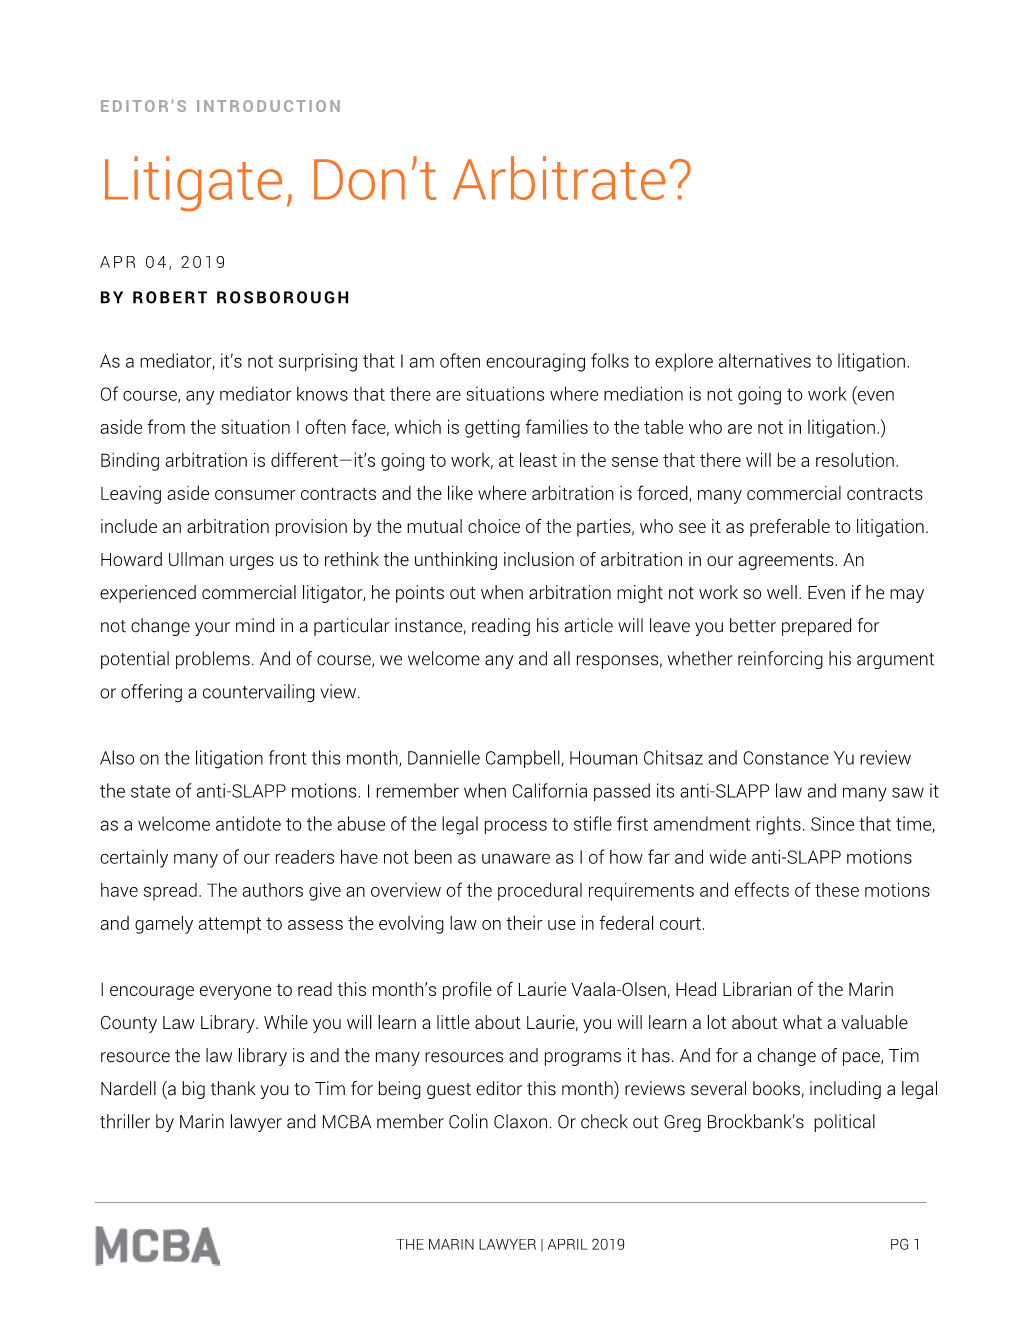 Litigate, Don't Arbitrate?